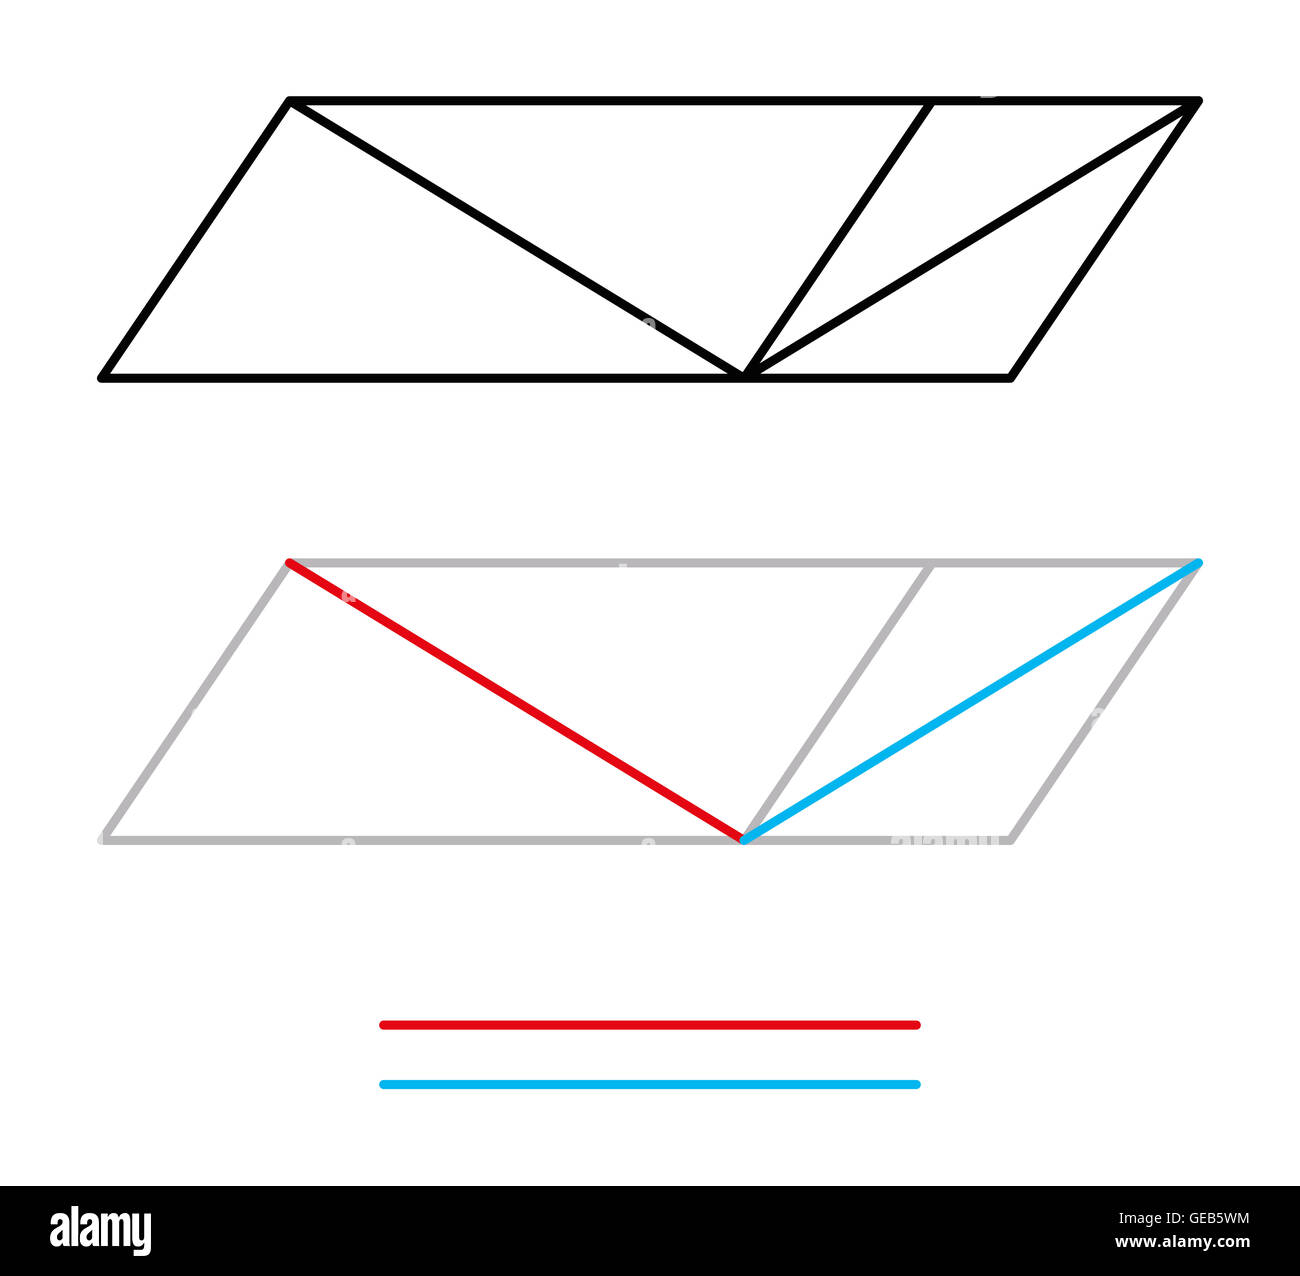 Sander illusion optique ou Sanders parallélogramme. La ligne diagonale gauche semble être plus longue que la ligne droite. Banque D'Images